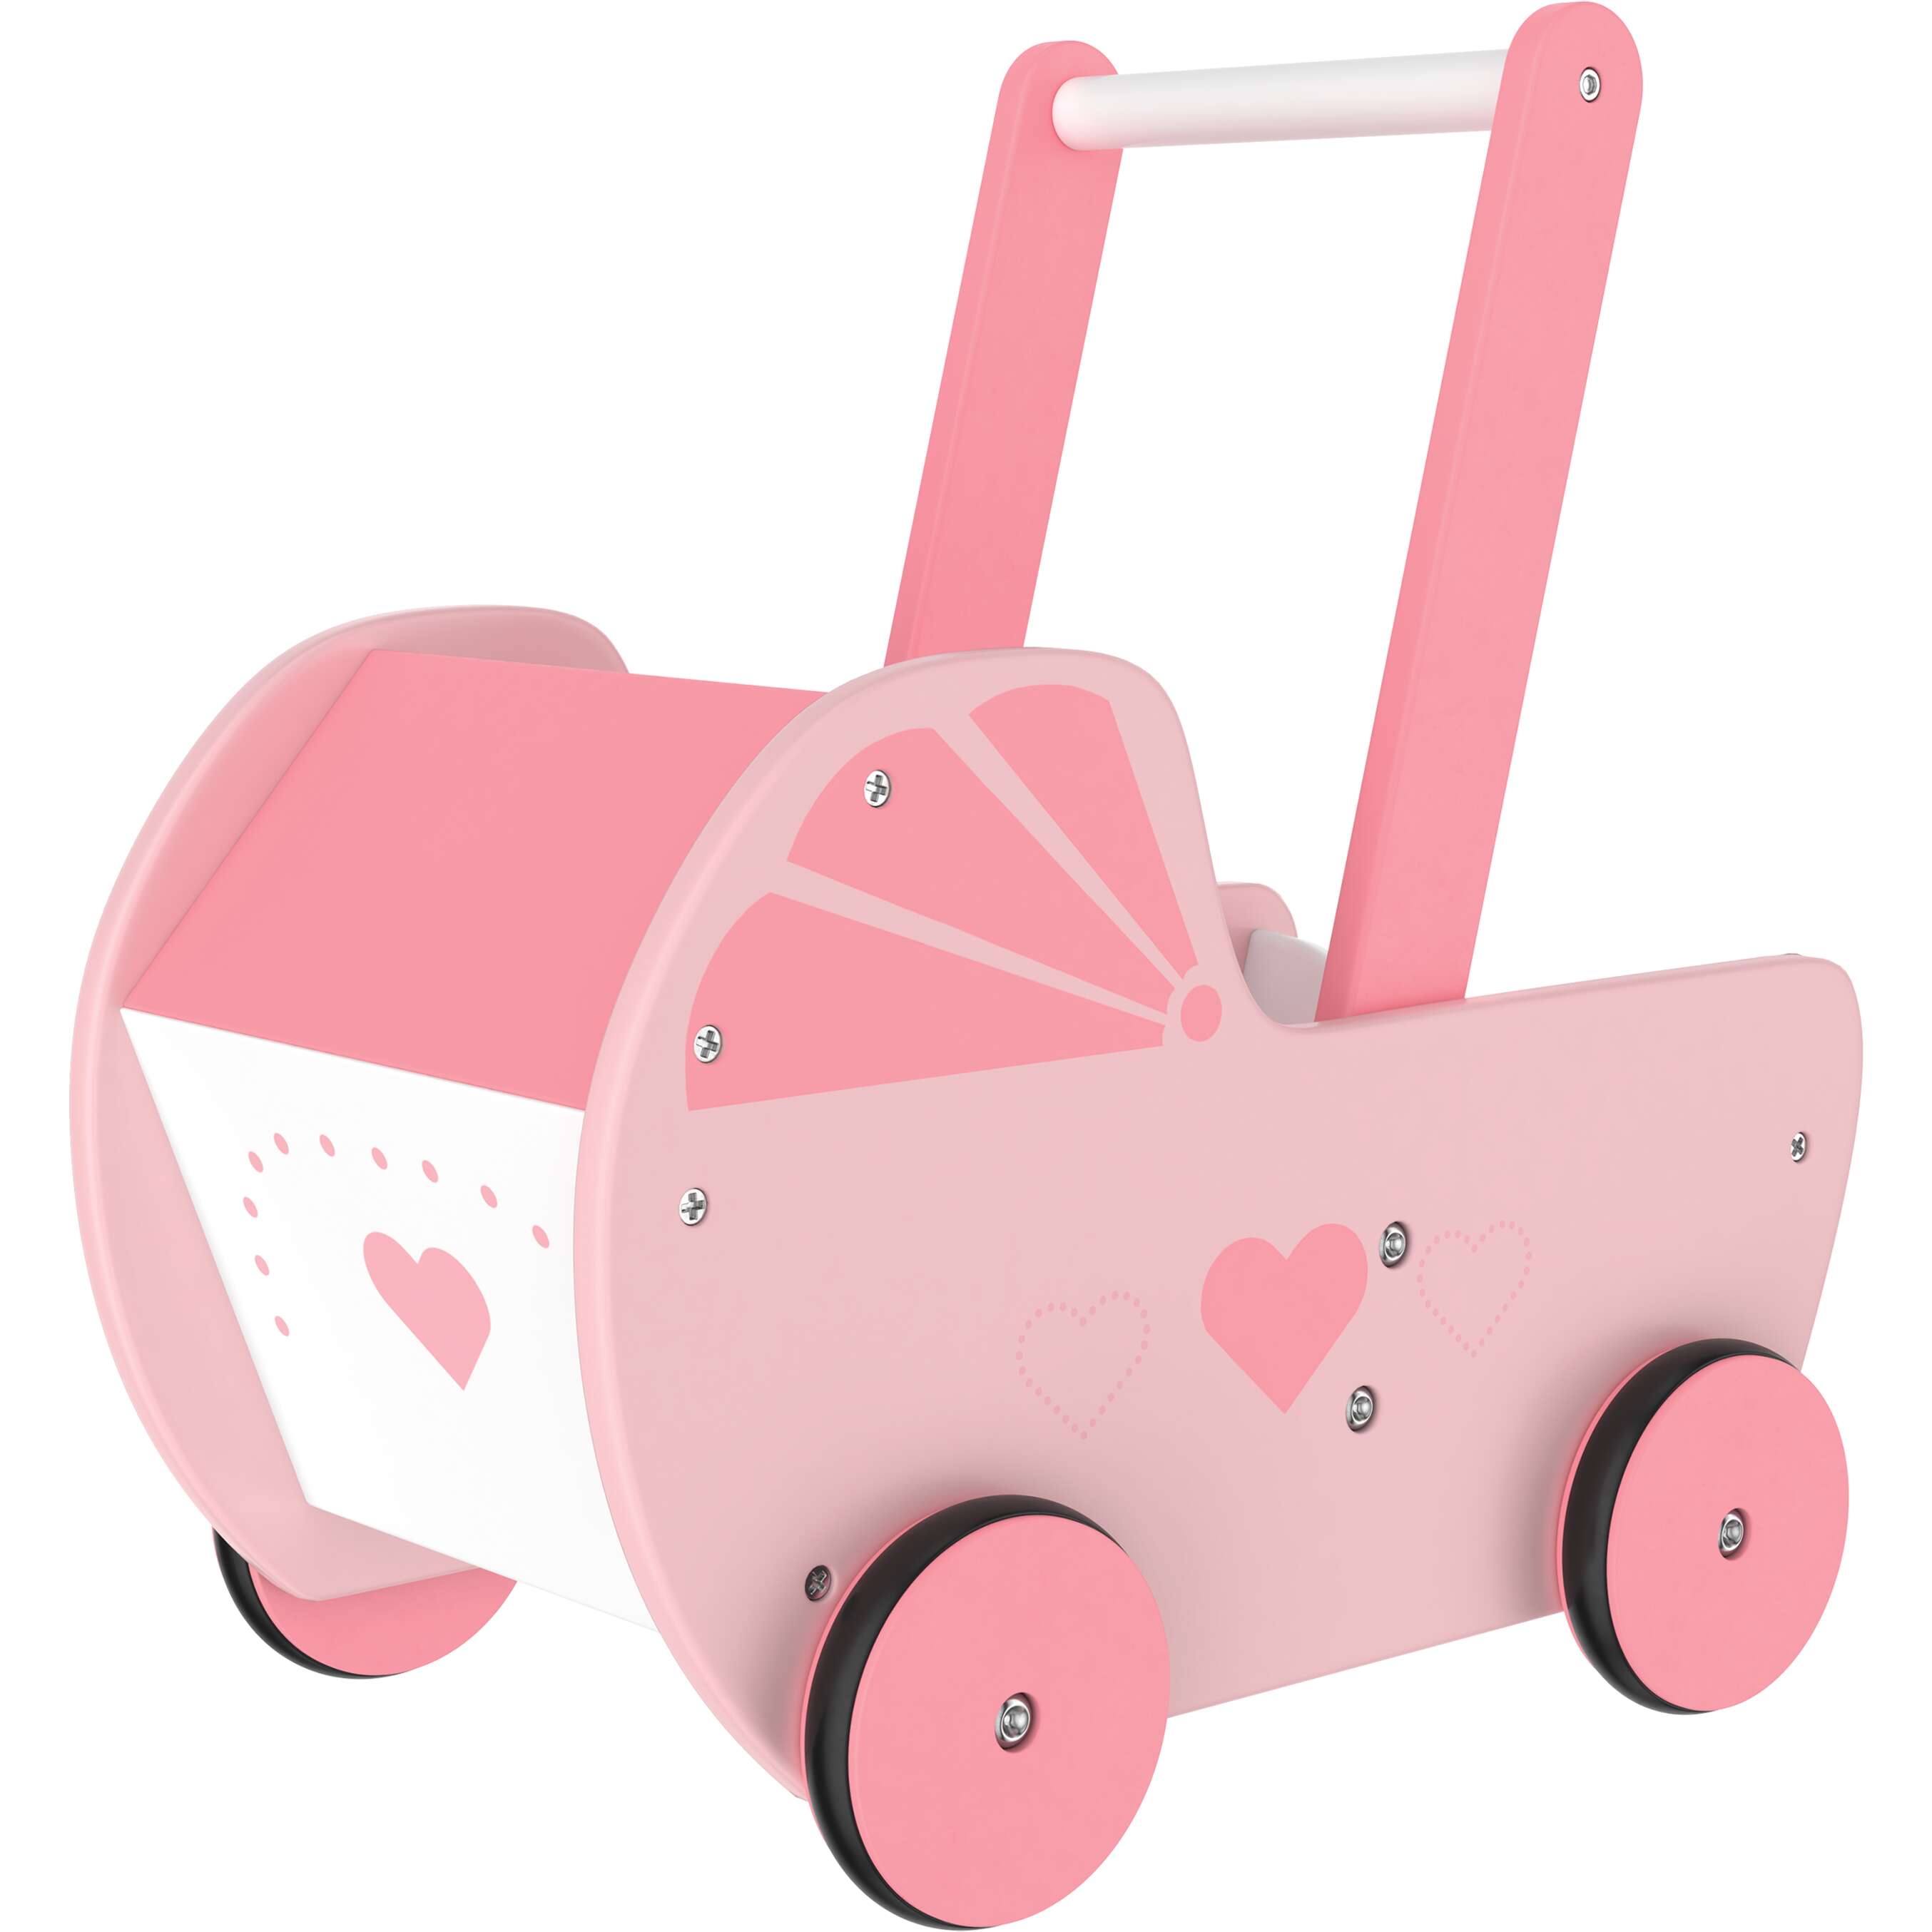 Fotografija ponude Kidland Dječja kolica za lutke